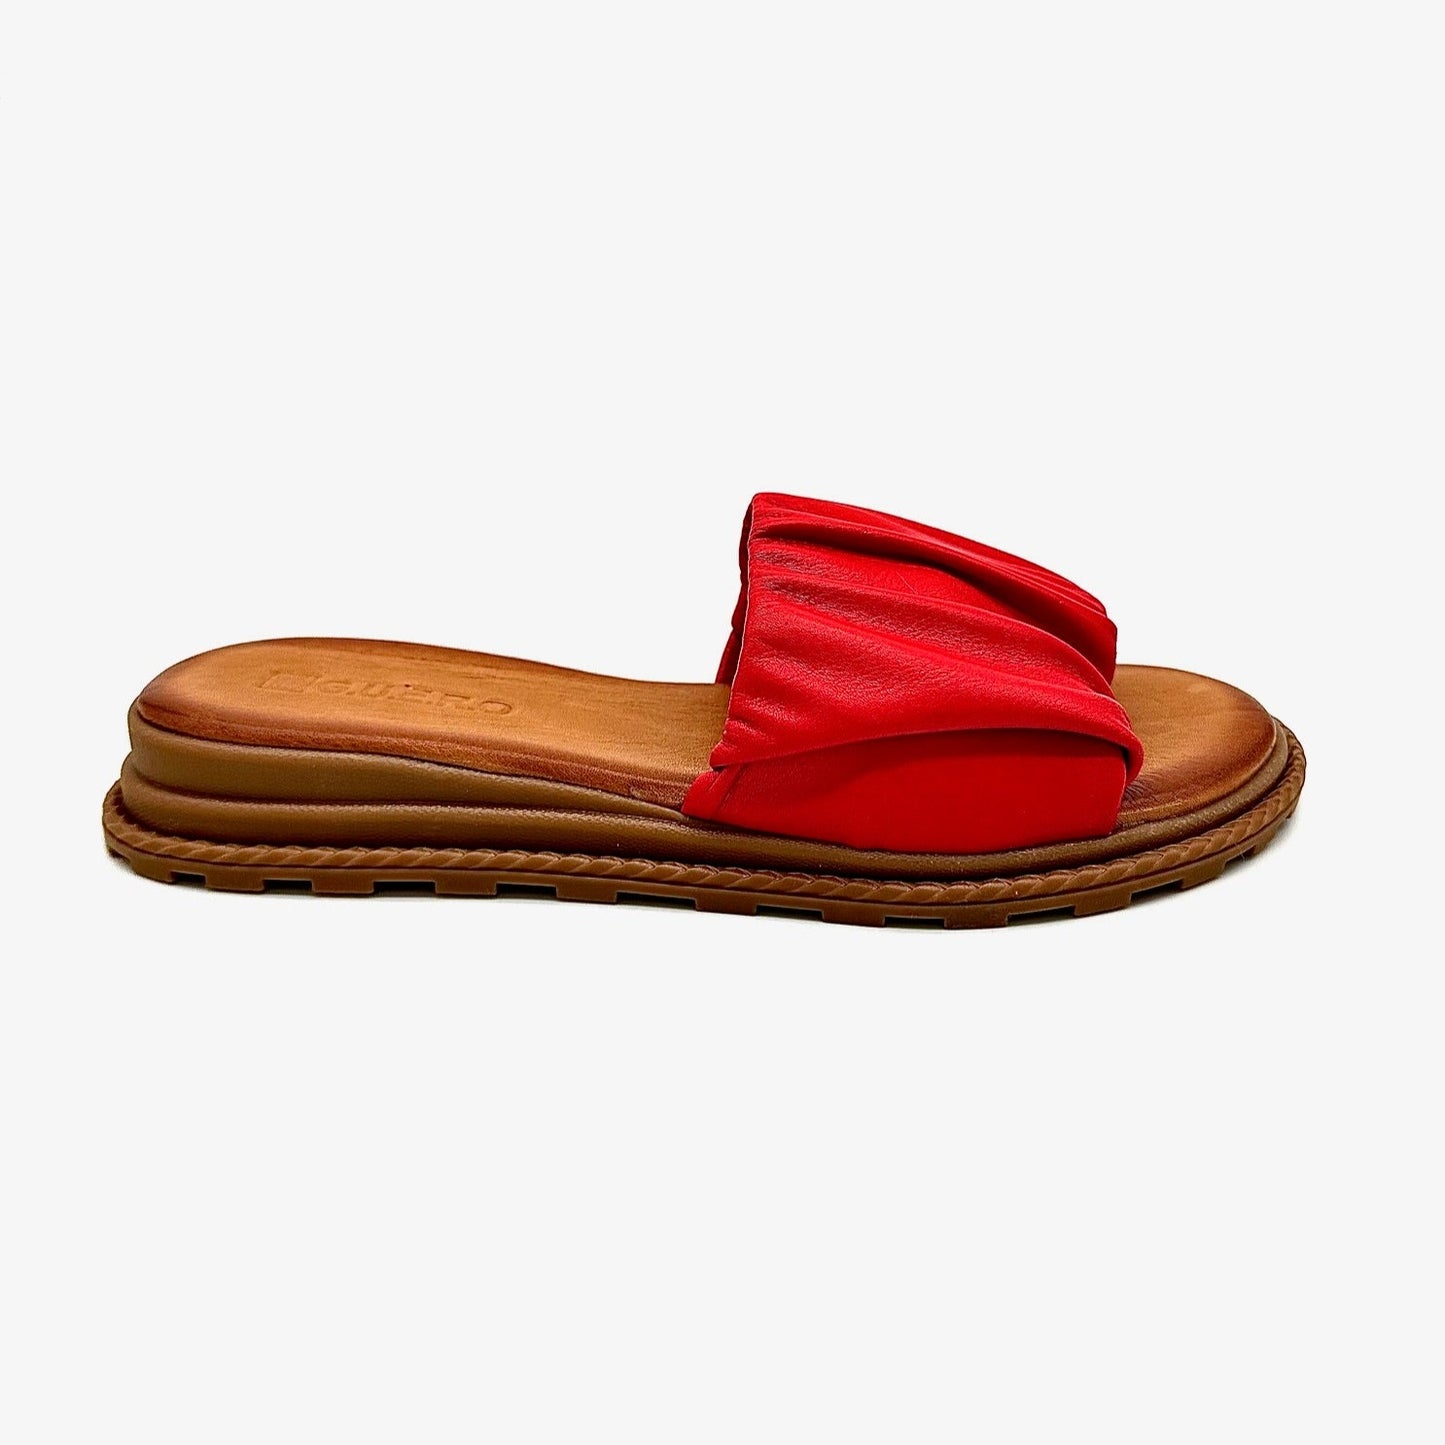 GUERO 021-215 Casual Open Sandal